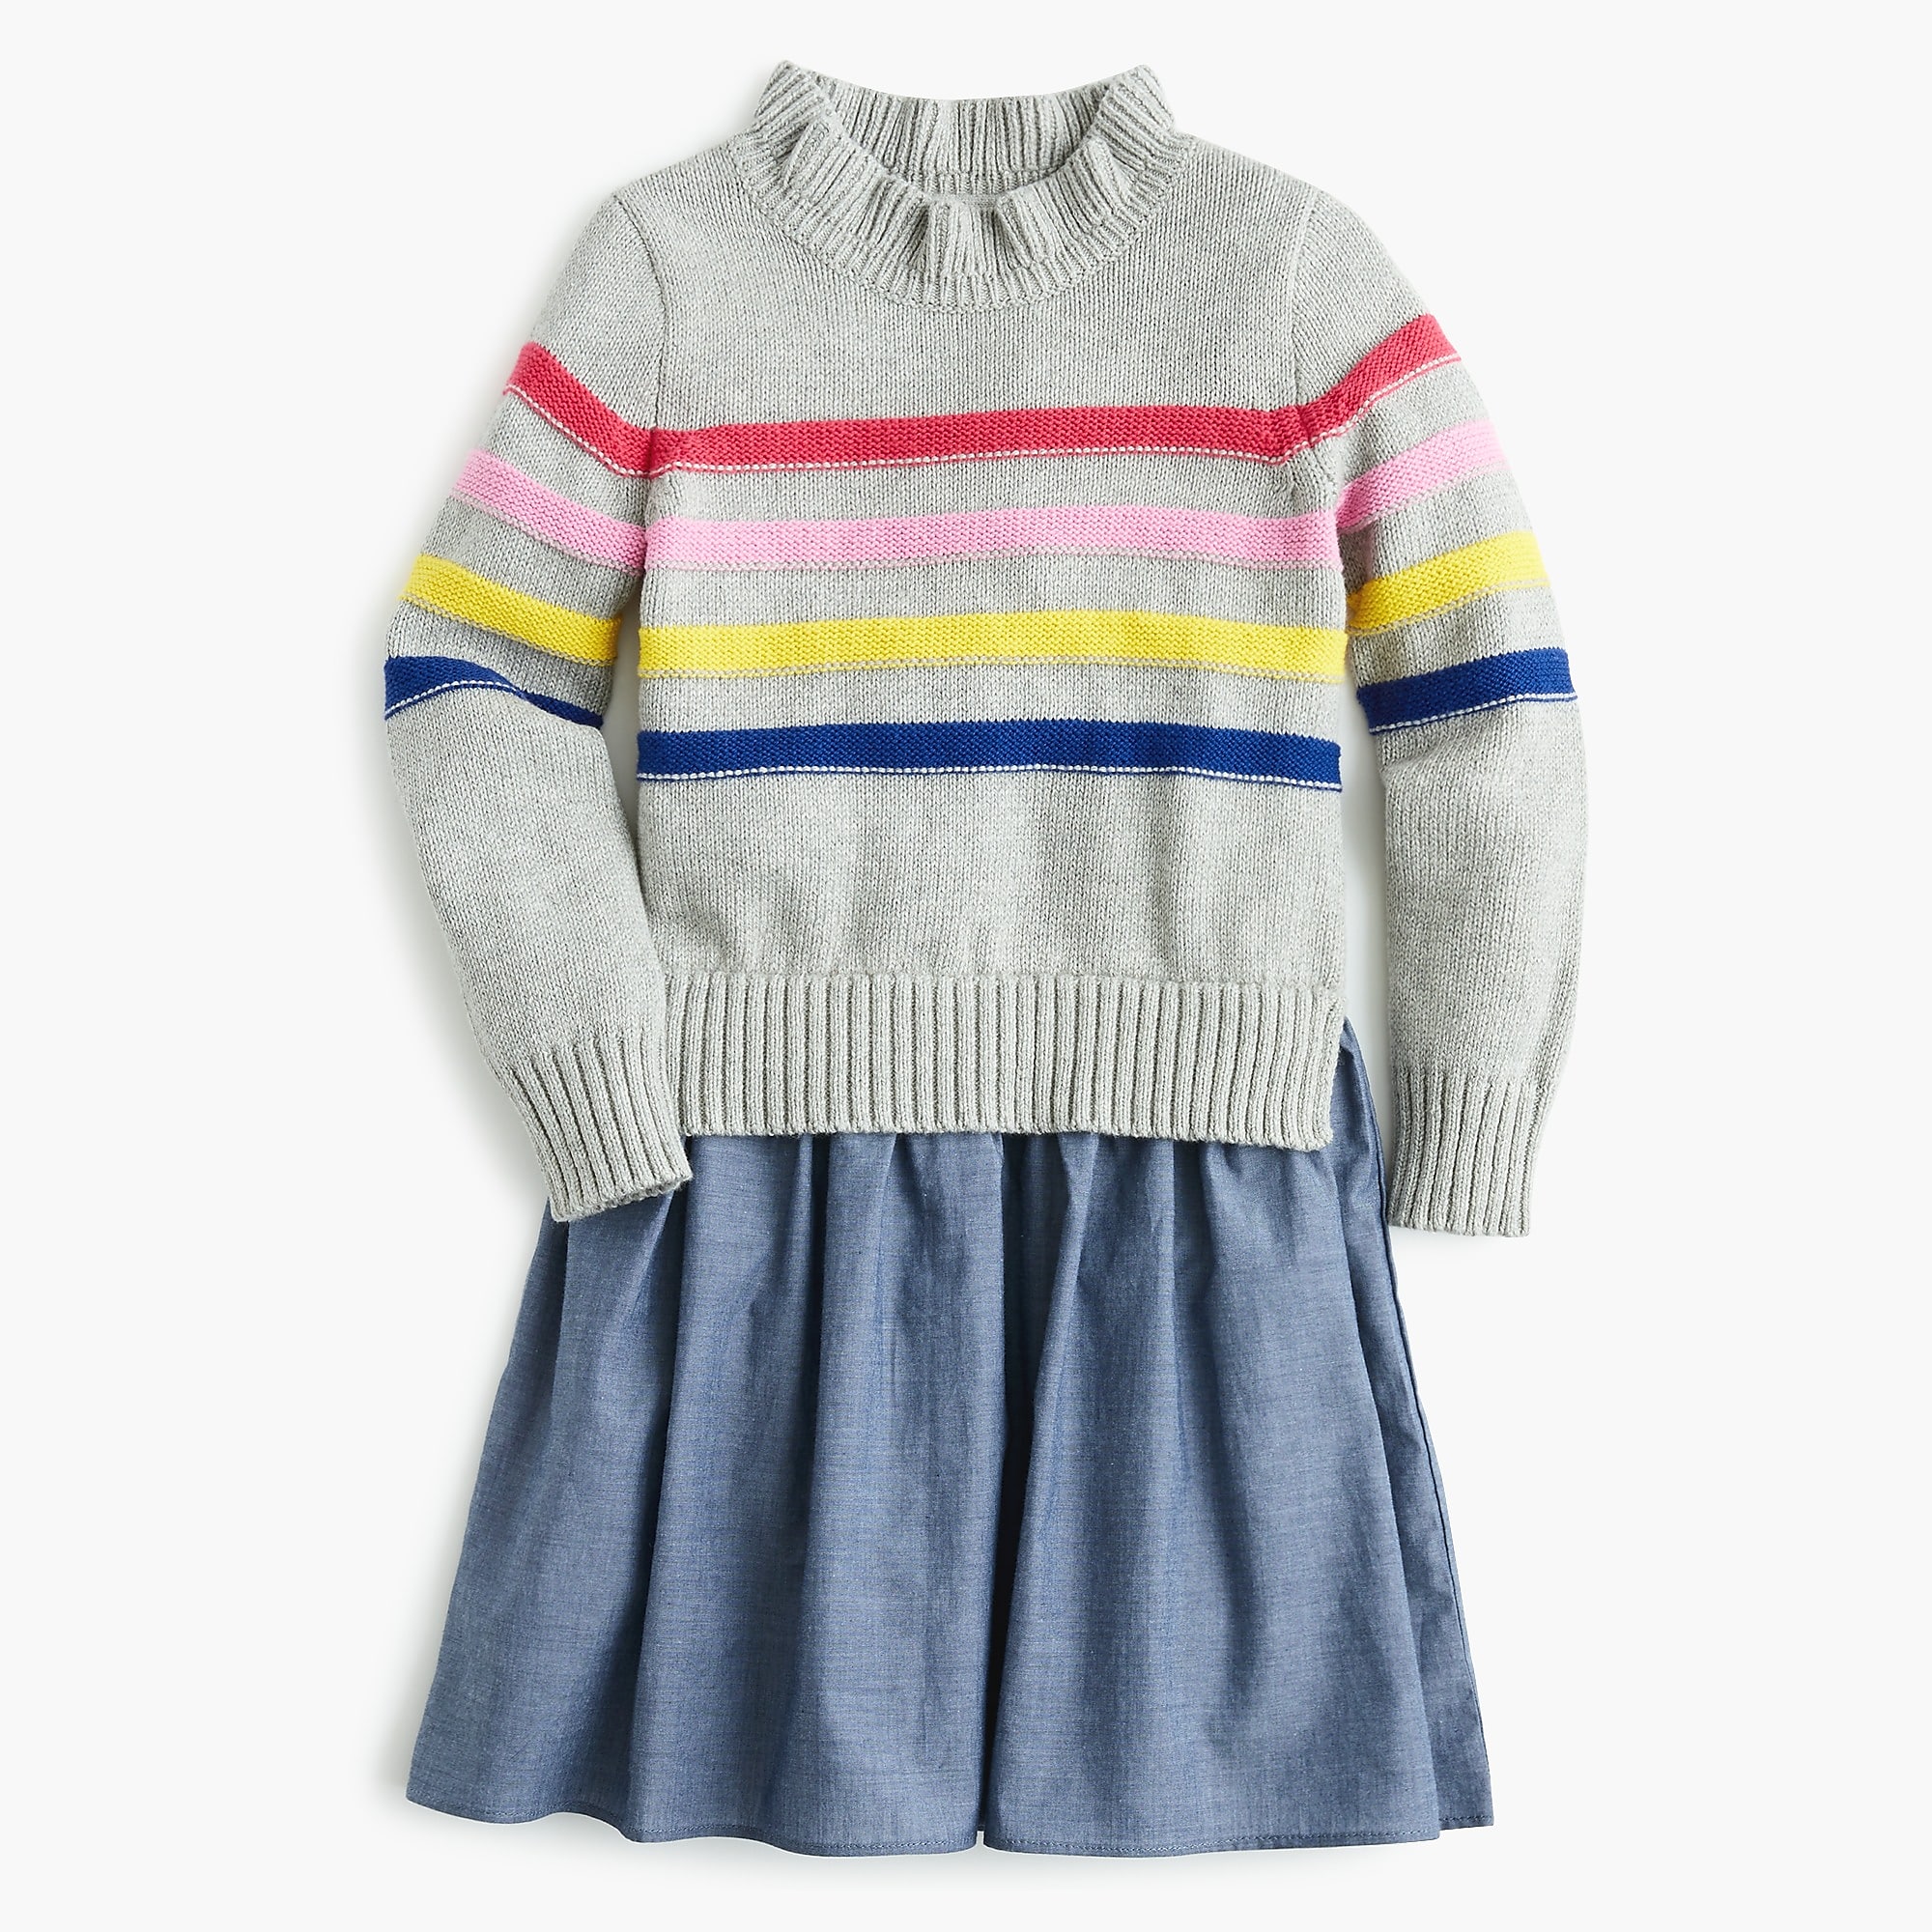 Girls’ mixy sweater dress